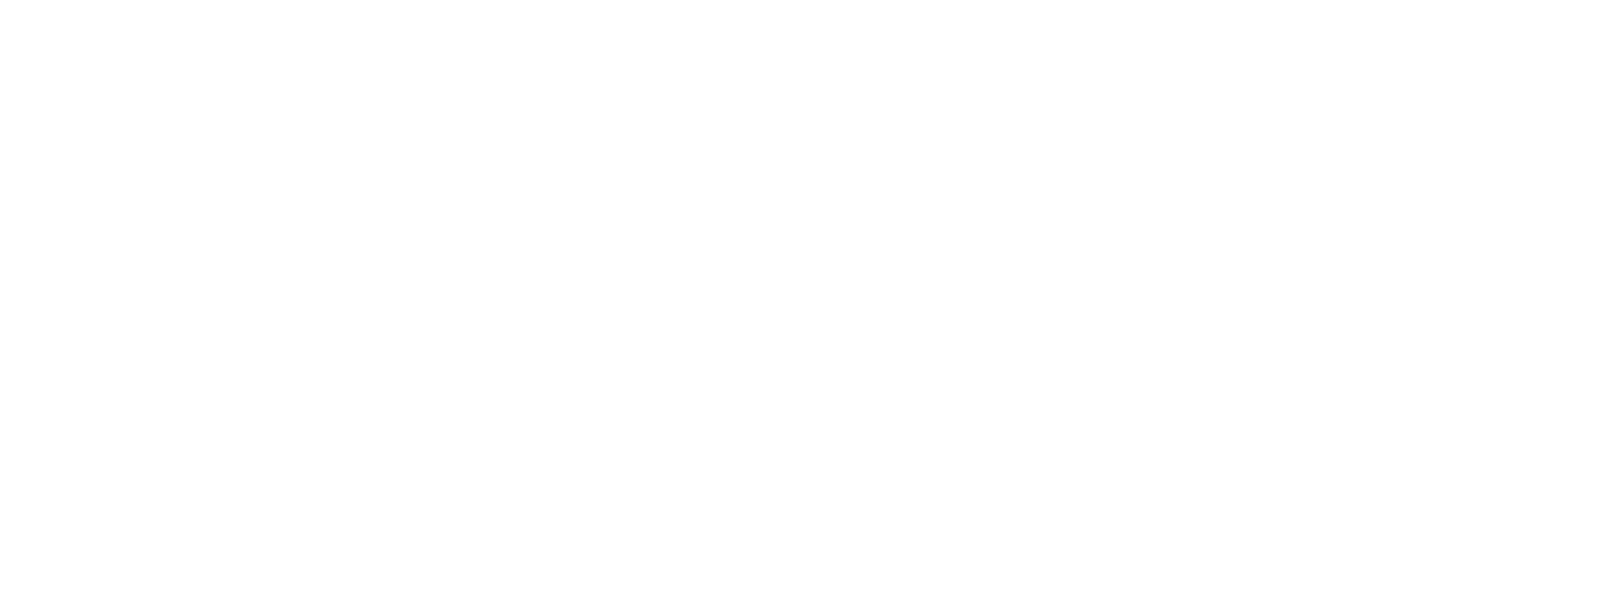 Prosoft45